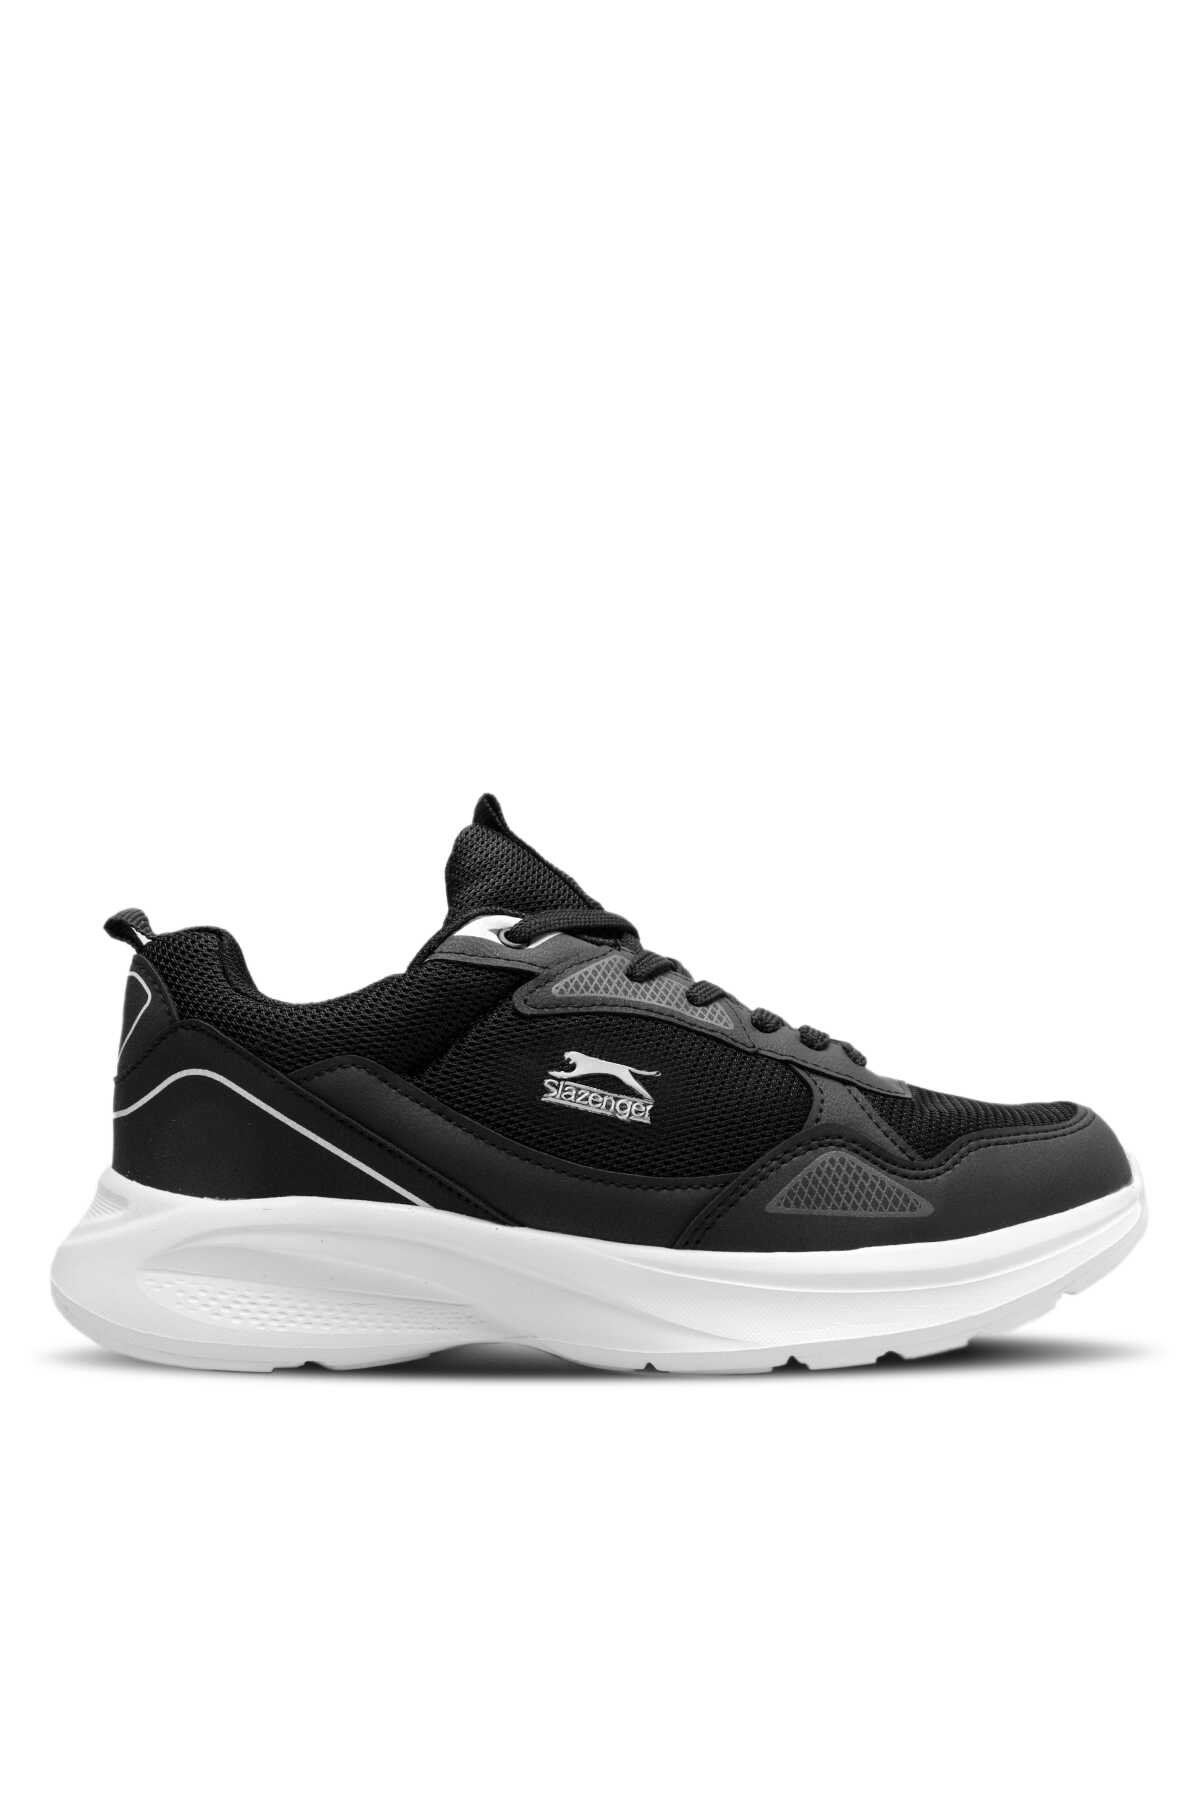 Slazenger - Slazenger GAIN GA Sneaker Erkek Ayakkabı Siyah / Beyaz